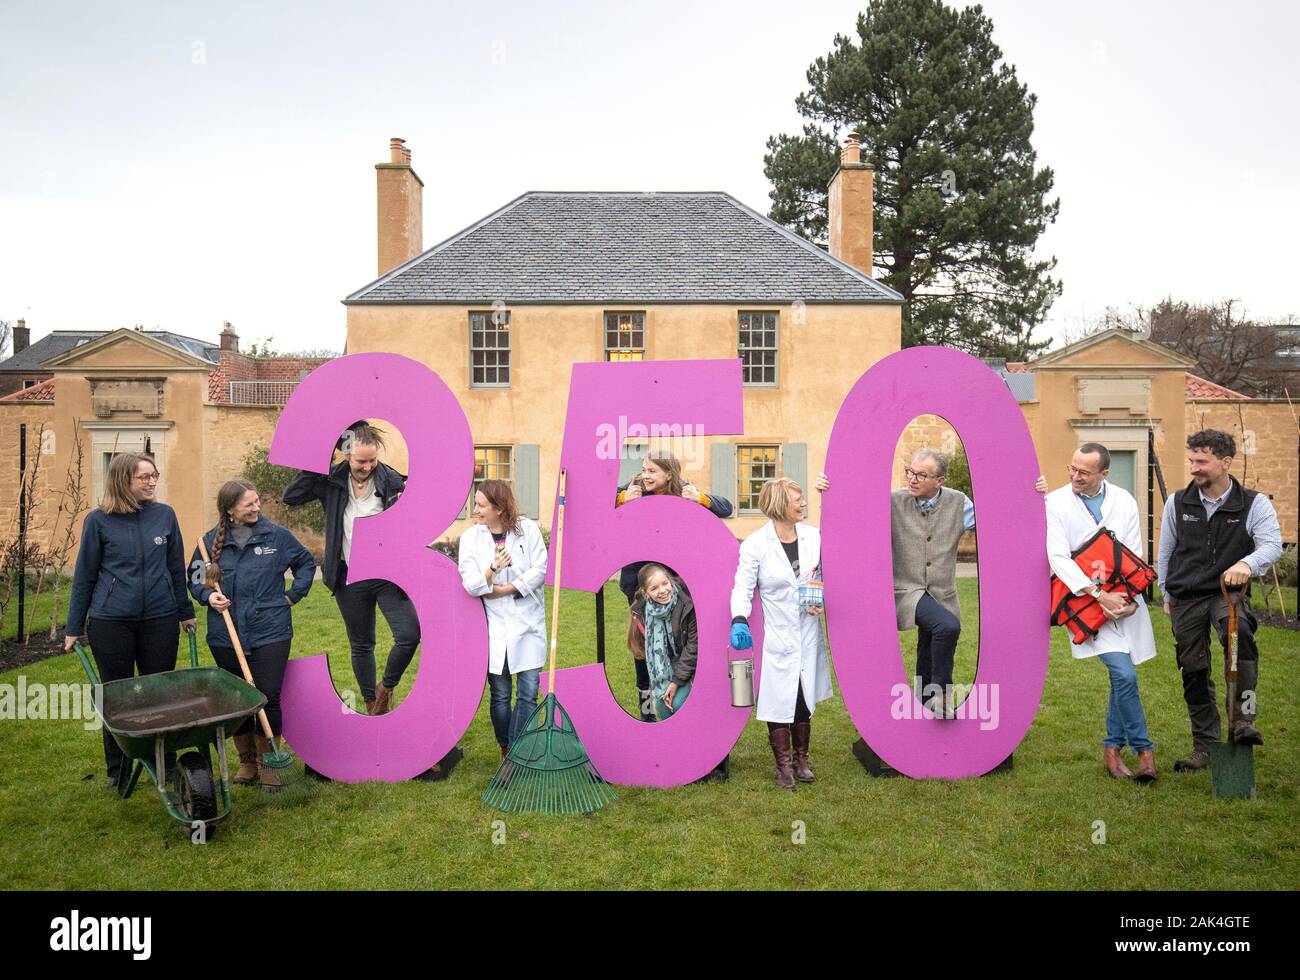 Gartenbau Mitarbeiter, Wissenschaftler und freiwillige posieren für ein Gruppenfoto vor dem Botanischen Cottage bei der Einführung eines speziellen Programms von Ereignissen, die für 2020 angekündigt wurden, zu 350 Jahre der Royal Botanic Garden in Edinburgh feiern. Stockfoto